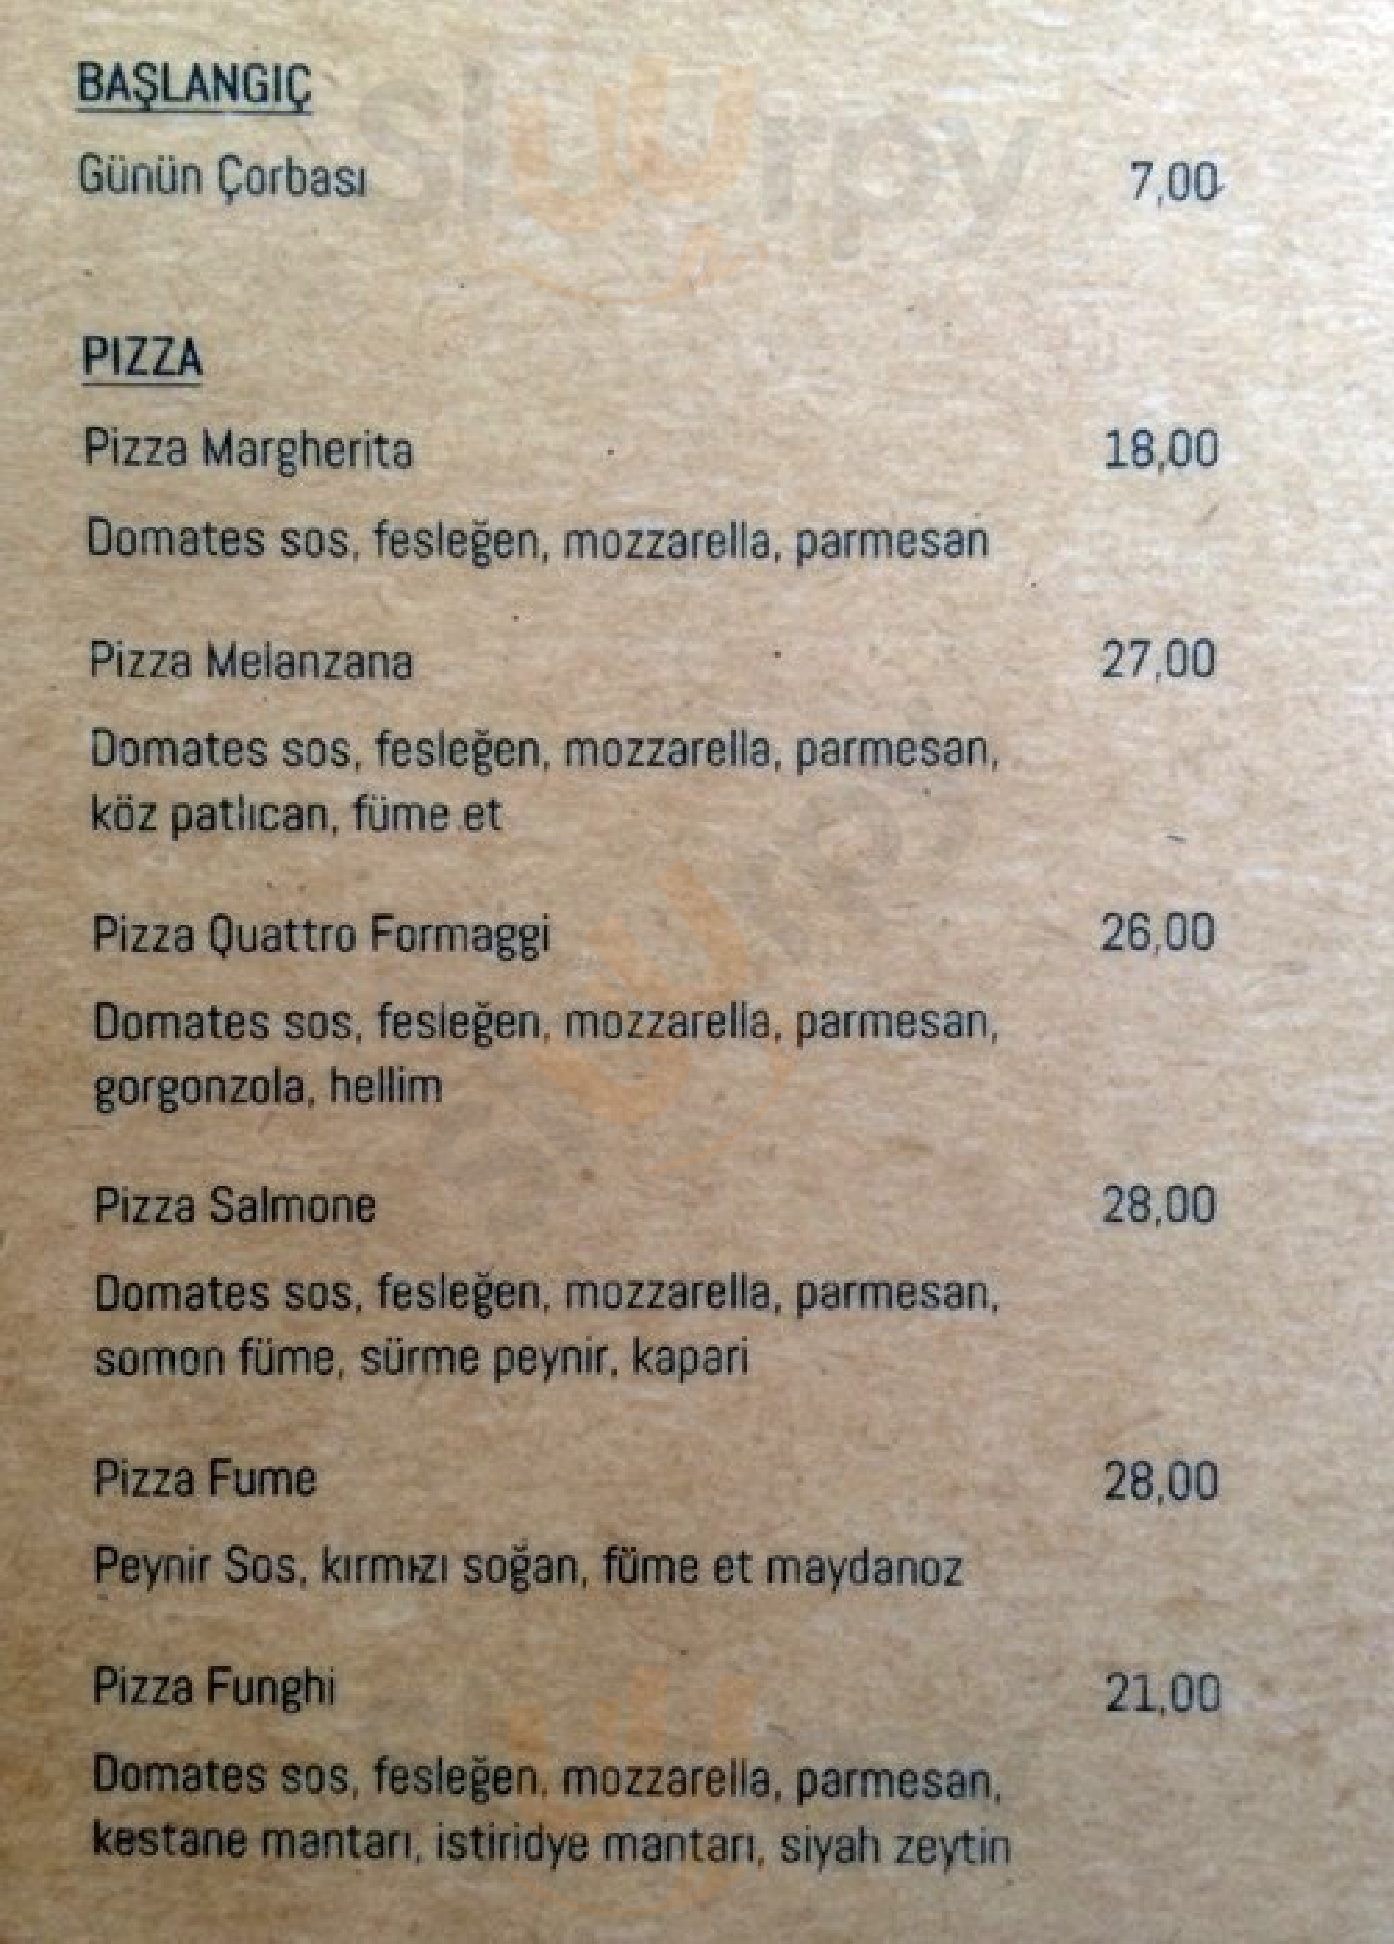 Mulinello Caffe & Pizzeria İstanbul Menu - 1